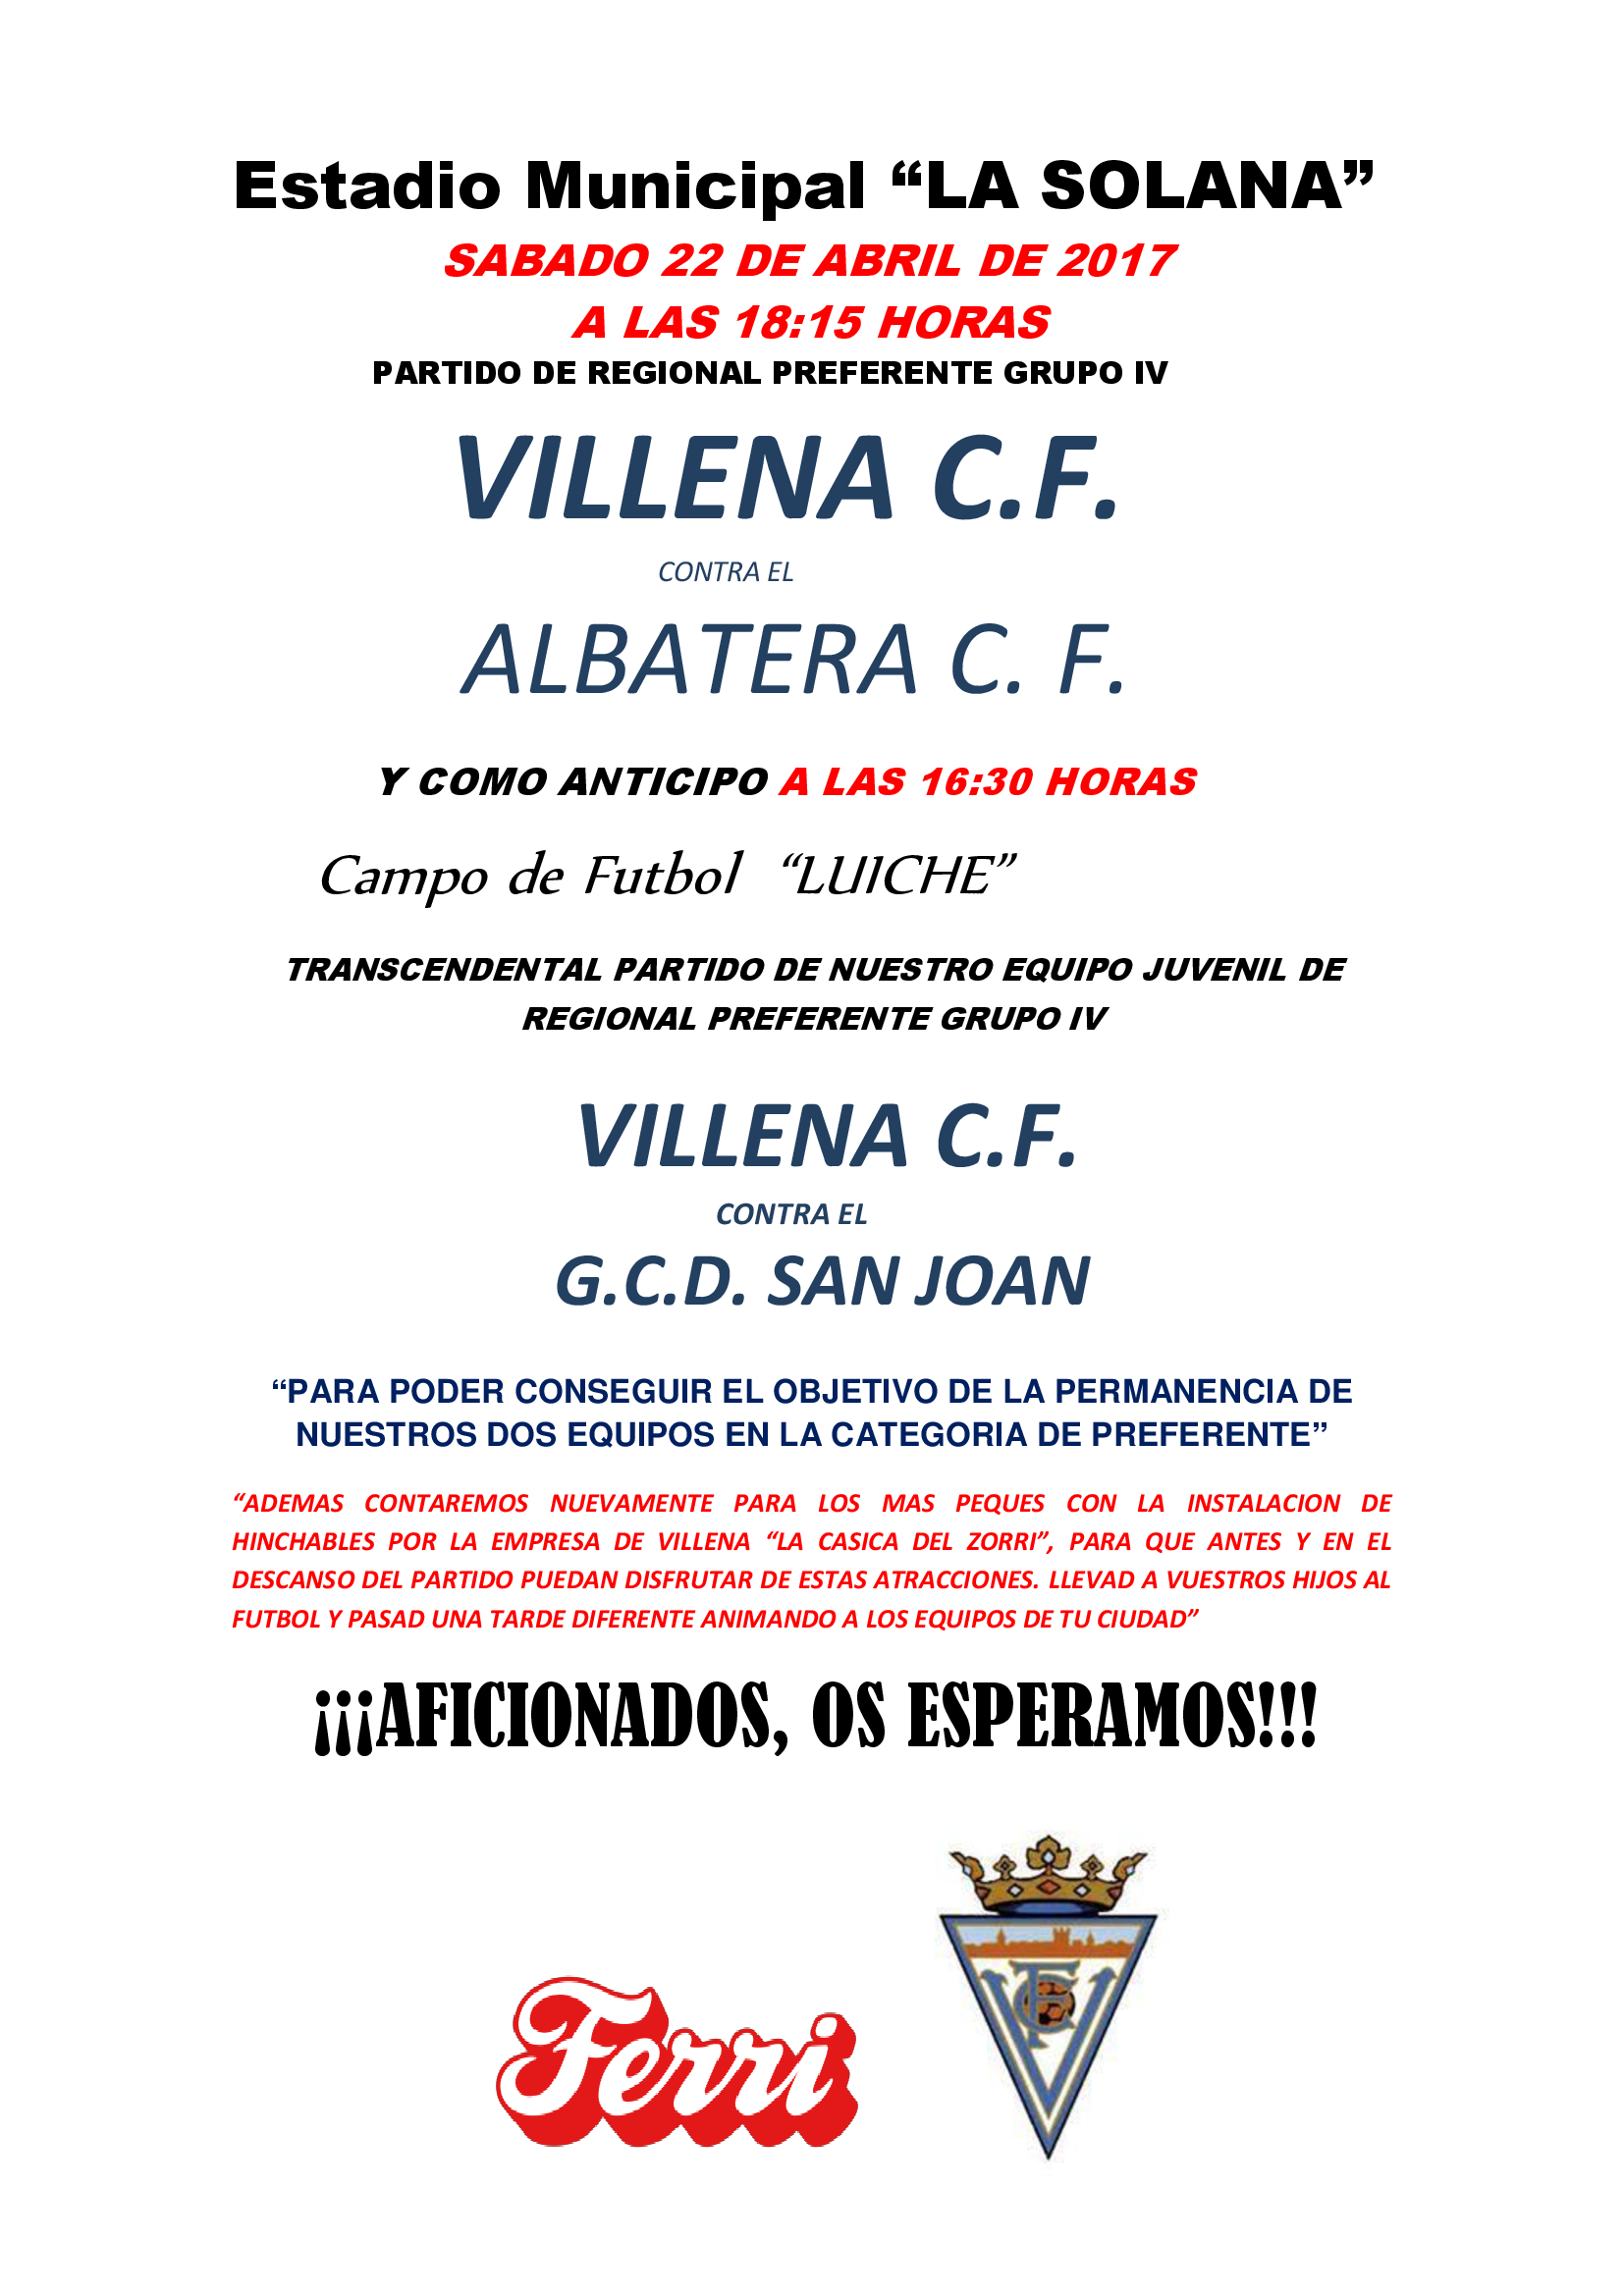 El Villena CF anima a la afición a que asista a La Solana el sábado 22 de abril